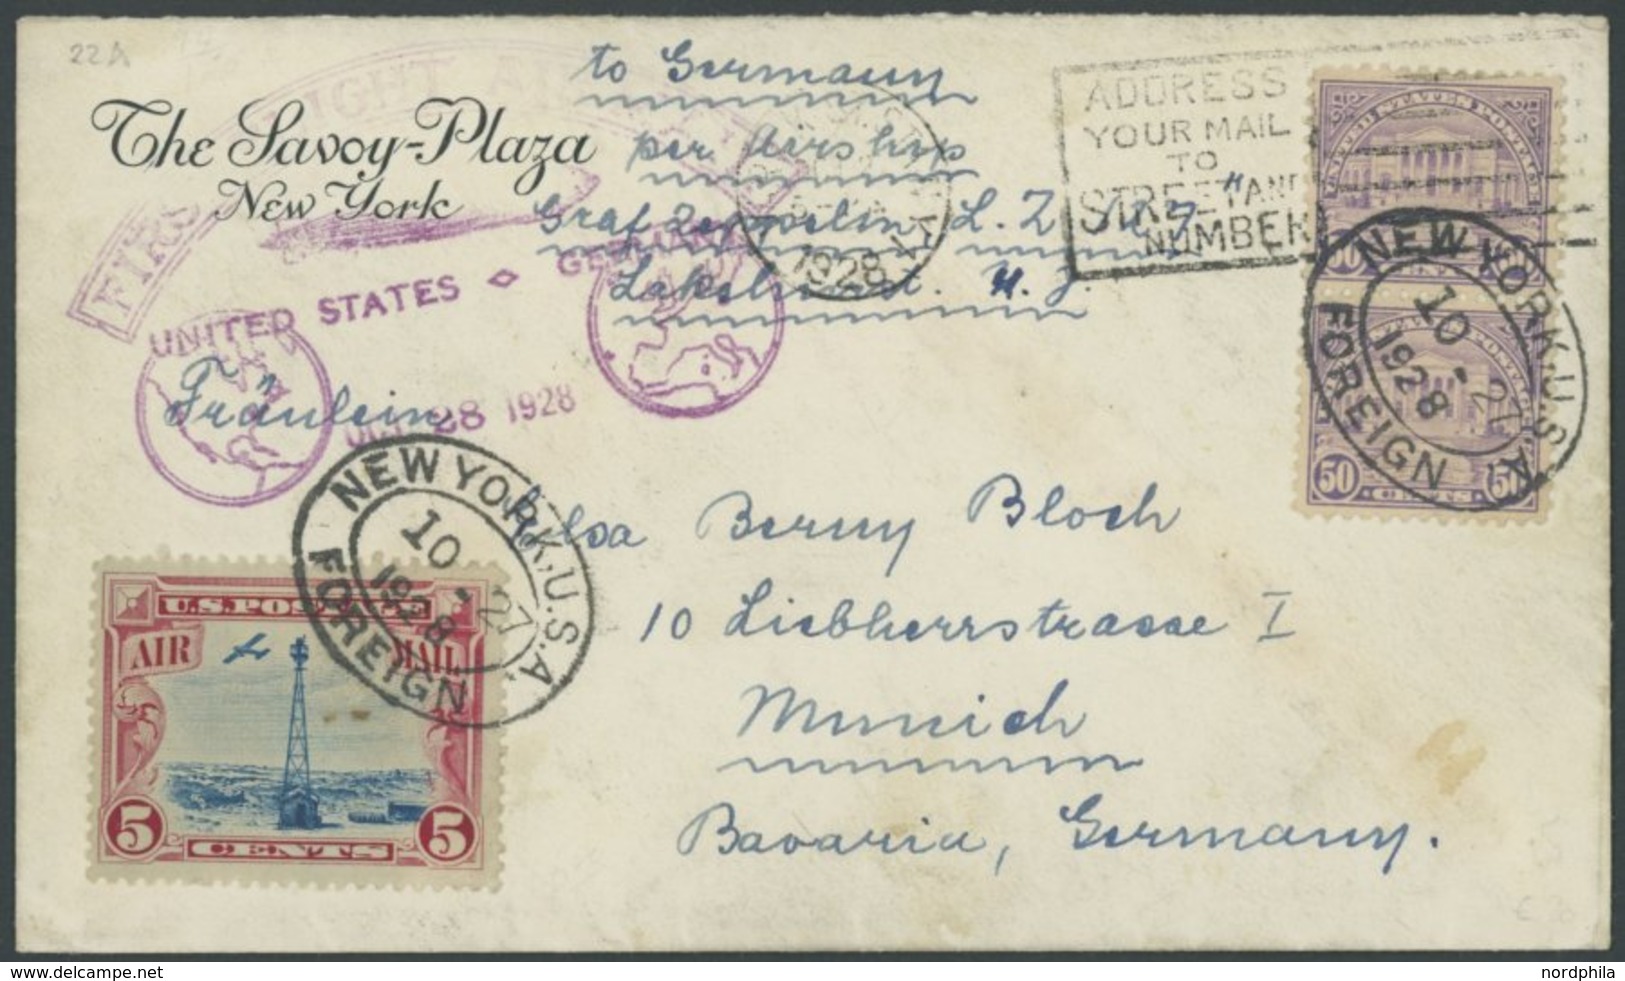 ZEPPELINPOST 22B BRIEF, 1928, Amerikafahrt, US-Post Zur Rückfahrt Mit Poststempel, Prachtbrief - Airmail & Zeppelin